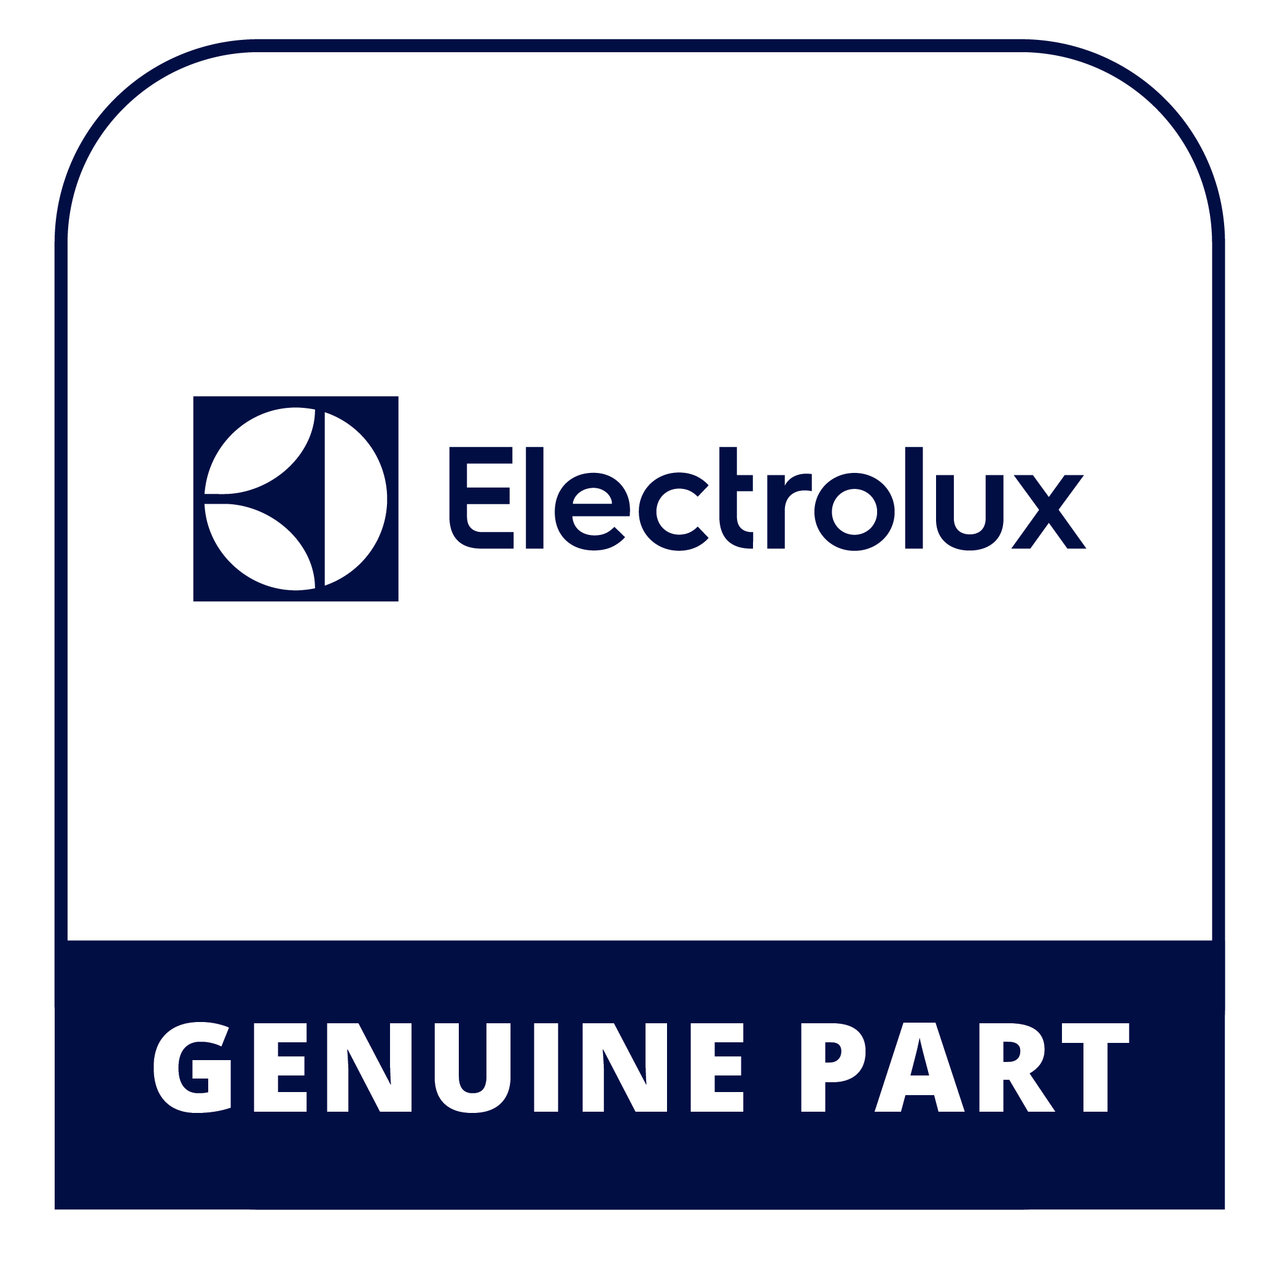 Frigidaire - Electrolux 316408000 Clip - Genuine Electrolux Part